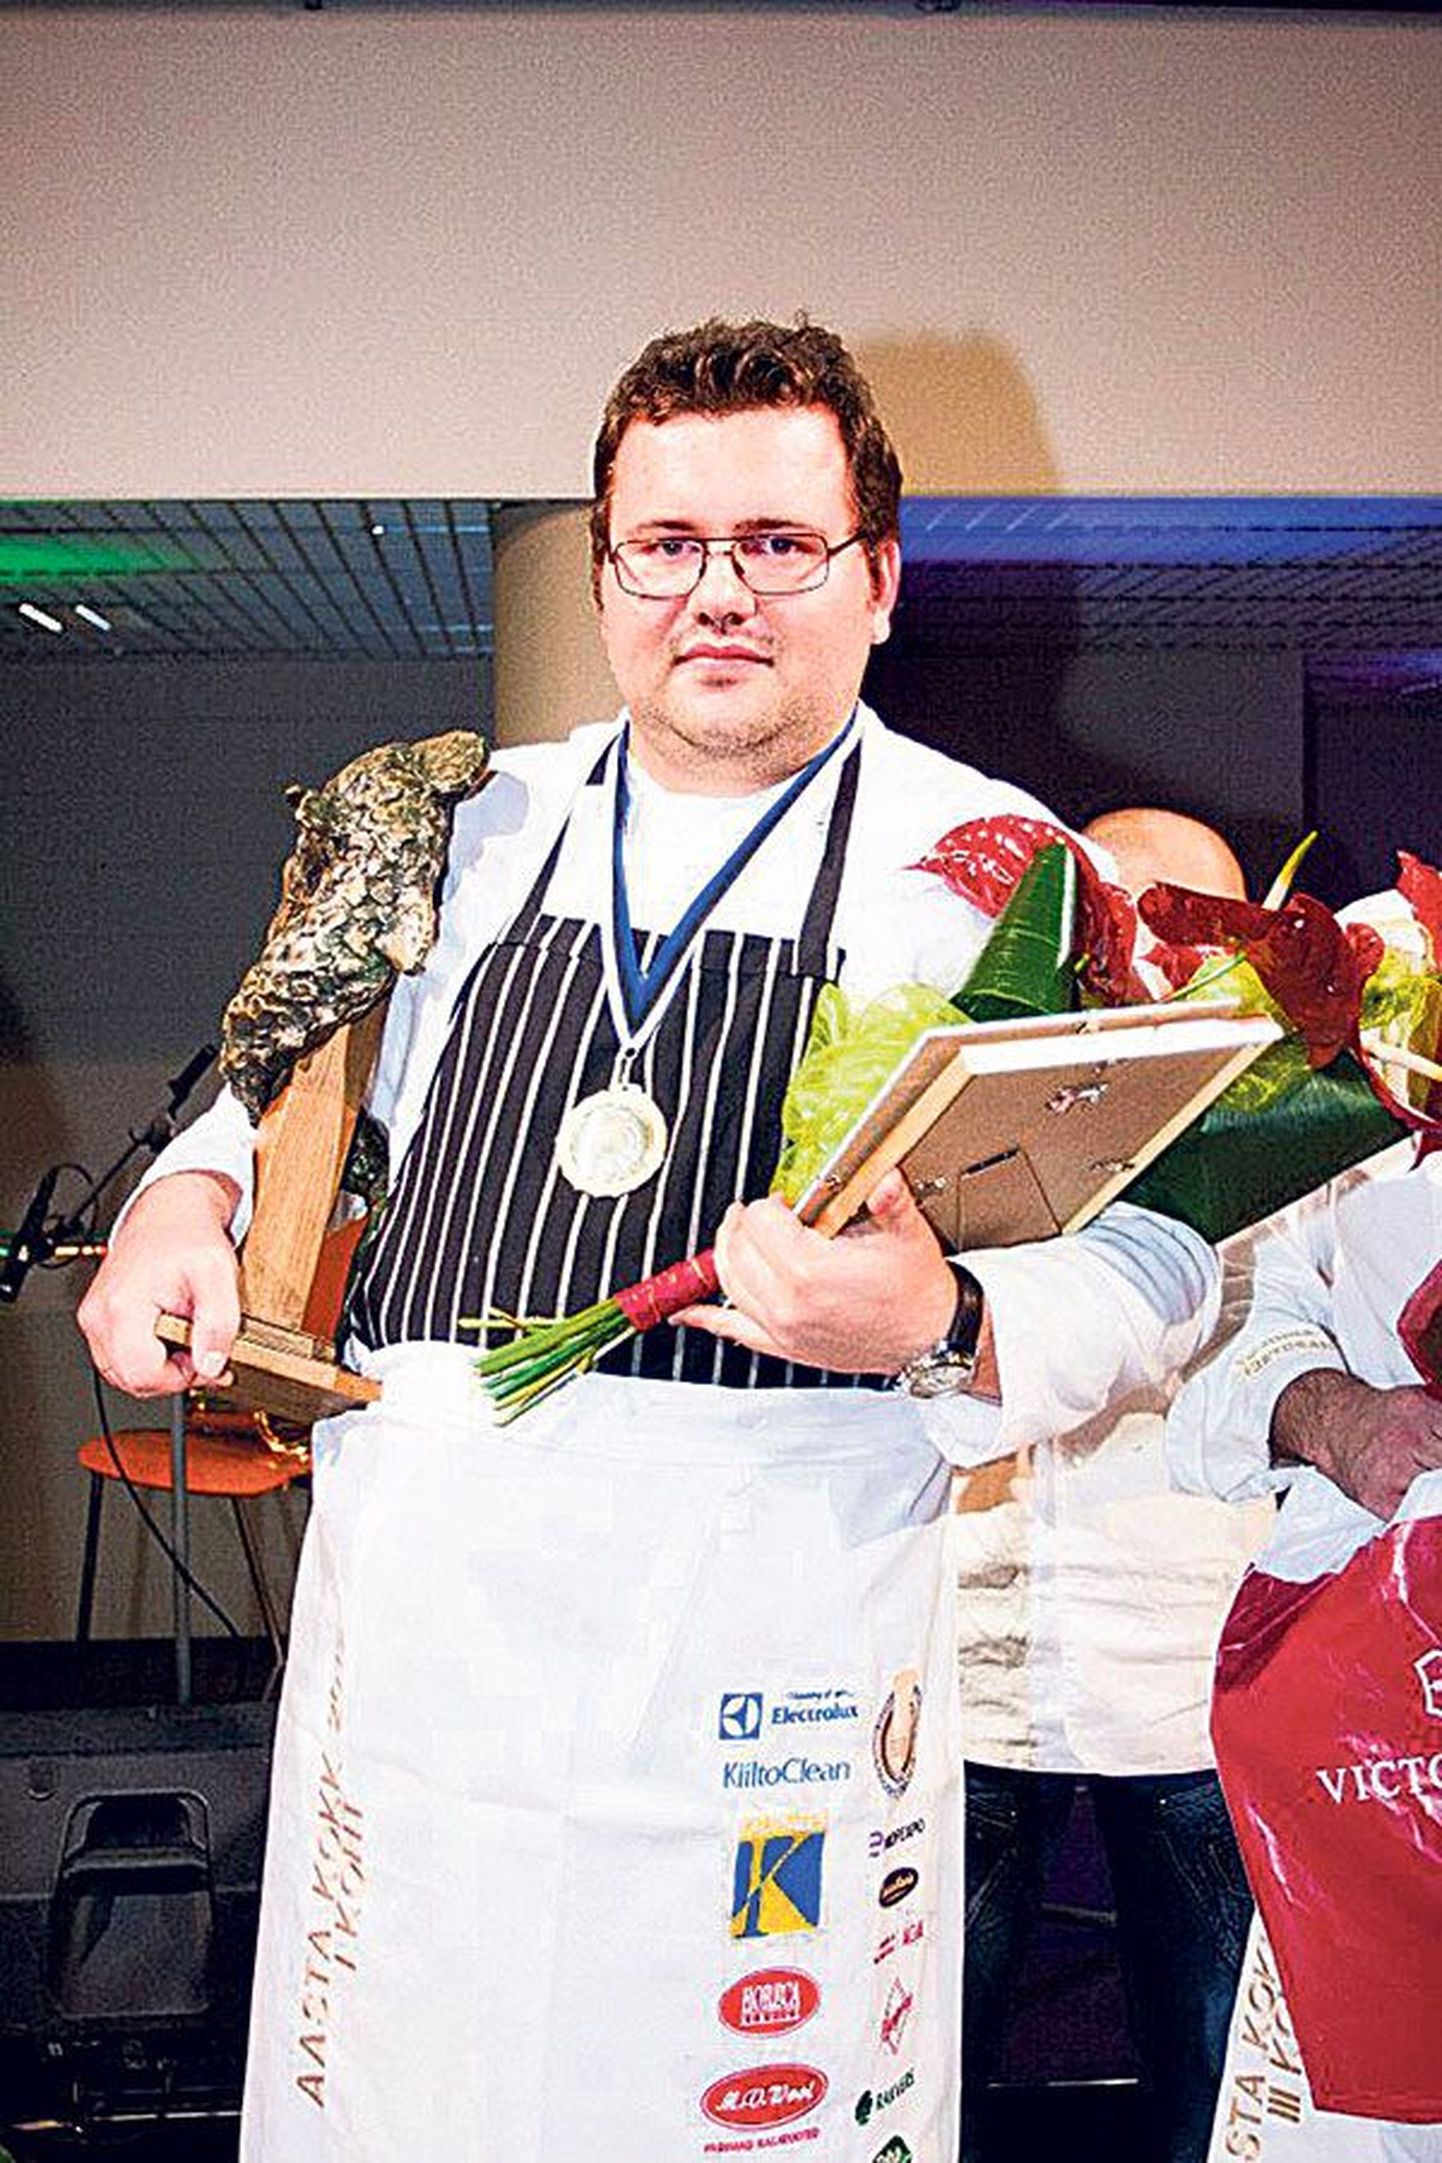 Aasta kokk 2012: Vladimir Upeniek.